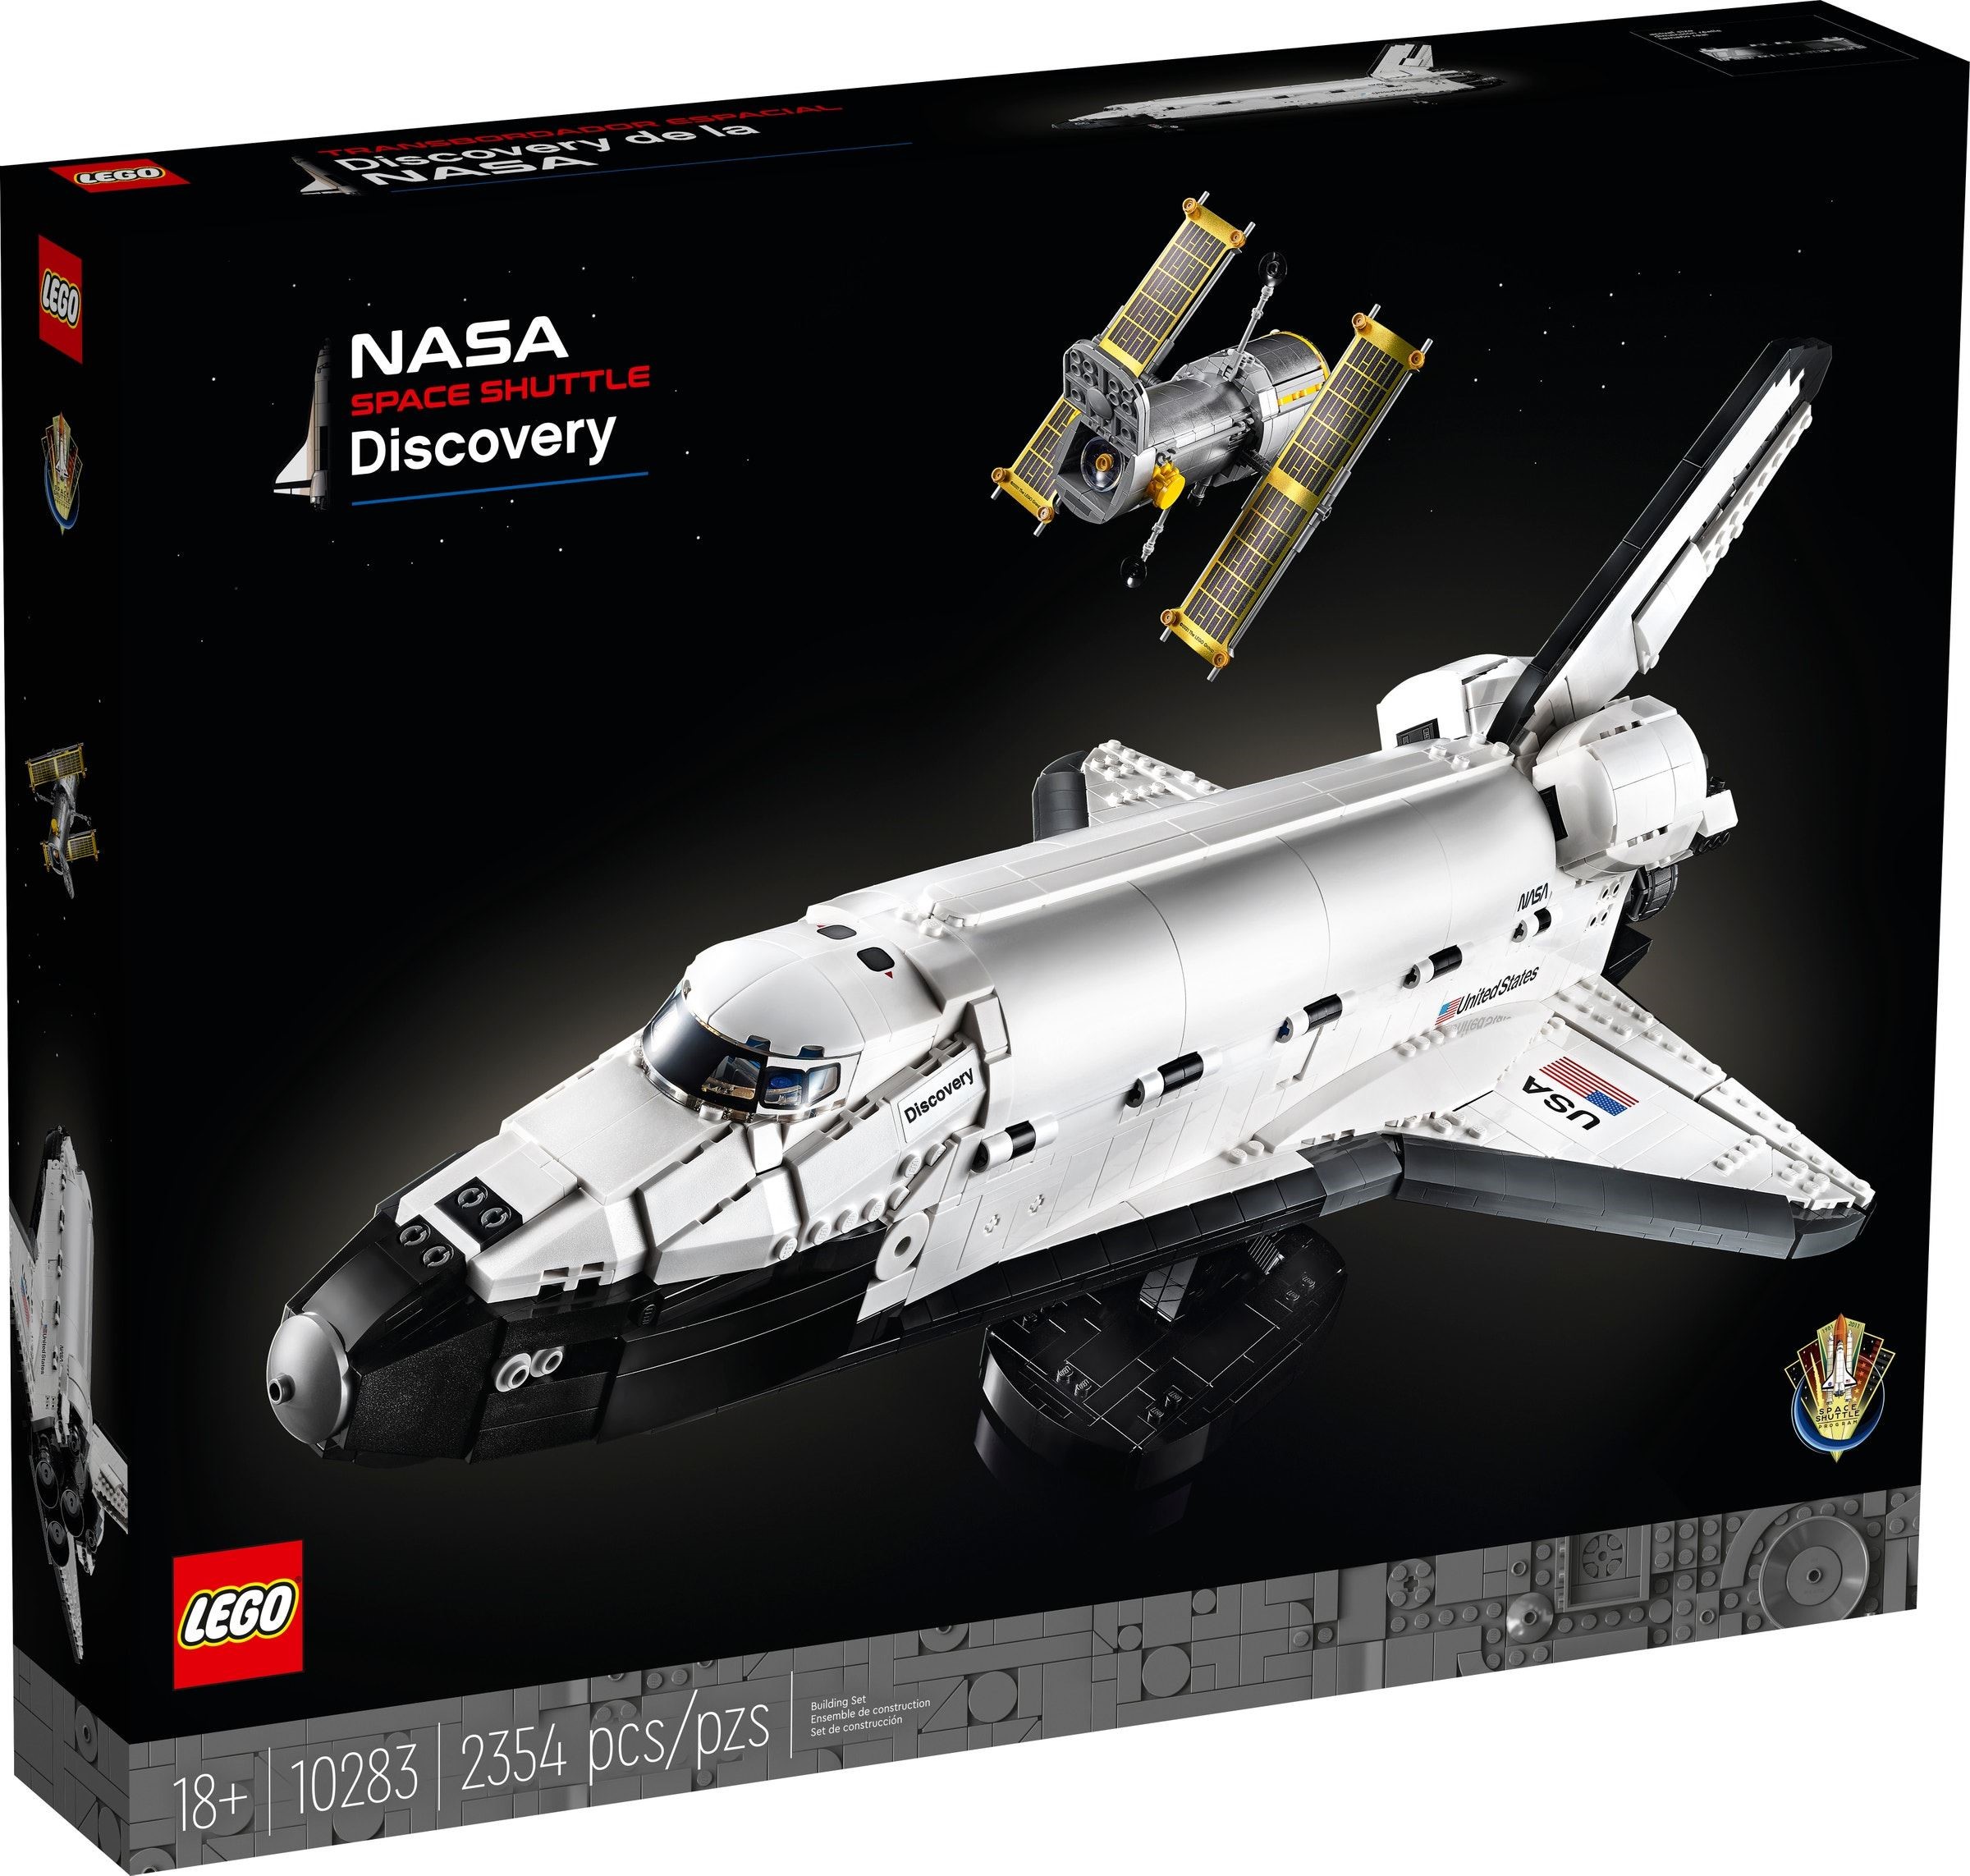 10283 Nasa Space Shuttle Discover